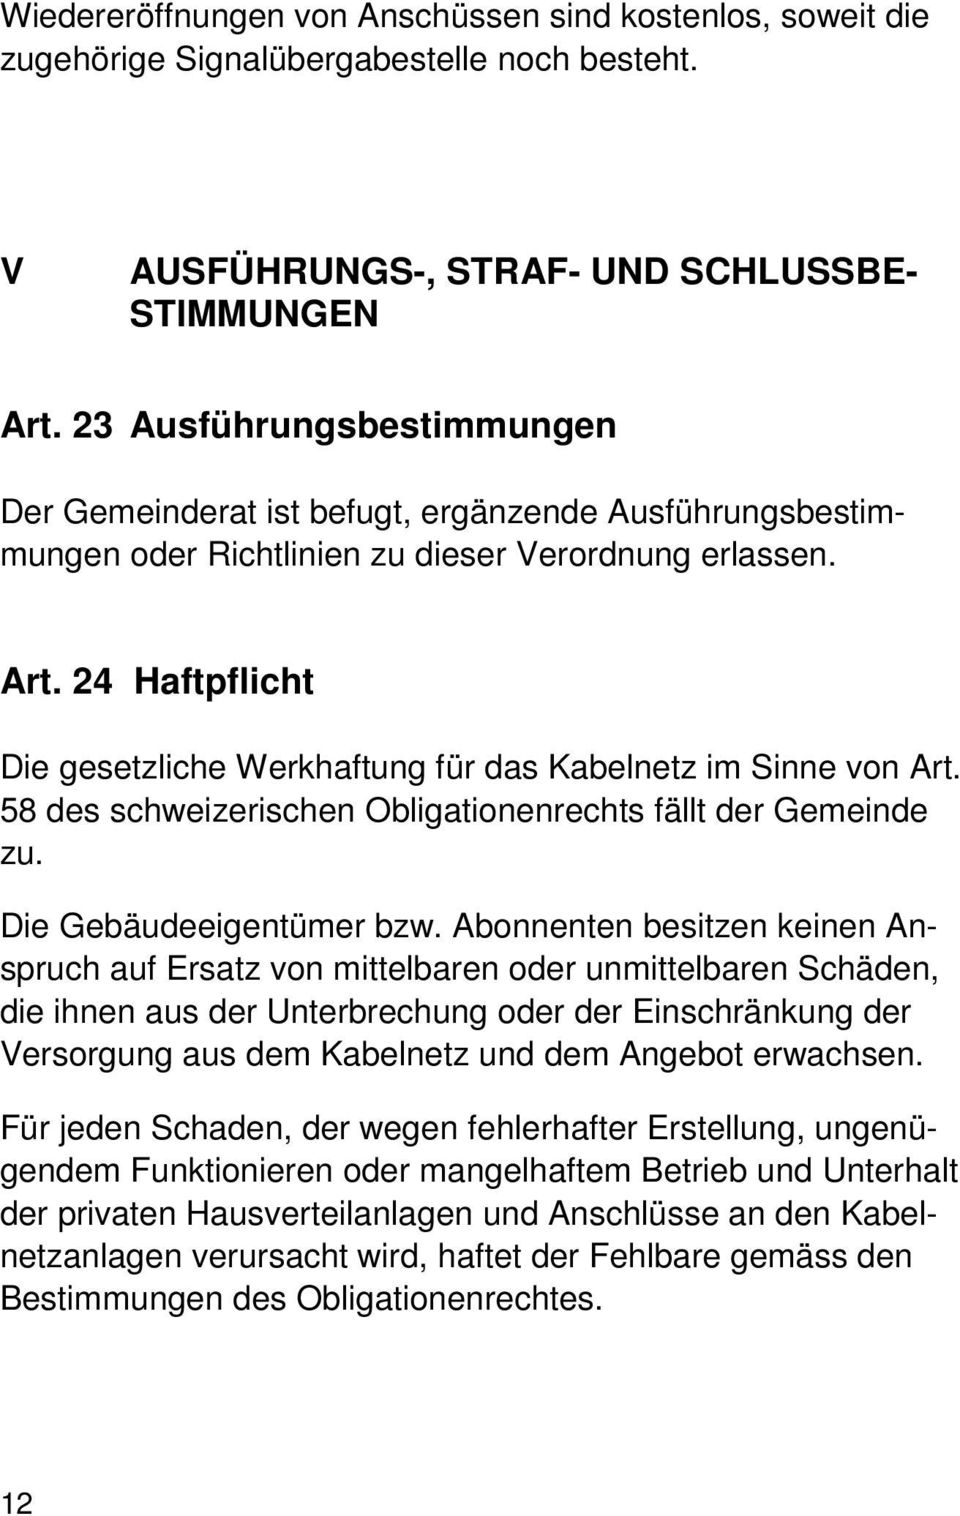 24 Haftpflicht Die gesetzliche Werkhaftung für das Kabelnetz im Sinne von Art. 58 des schweizerischen Obligationenrechts fällt der Gemeinde zu. Die Gebäudeeigentümer bzw.